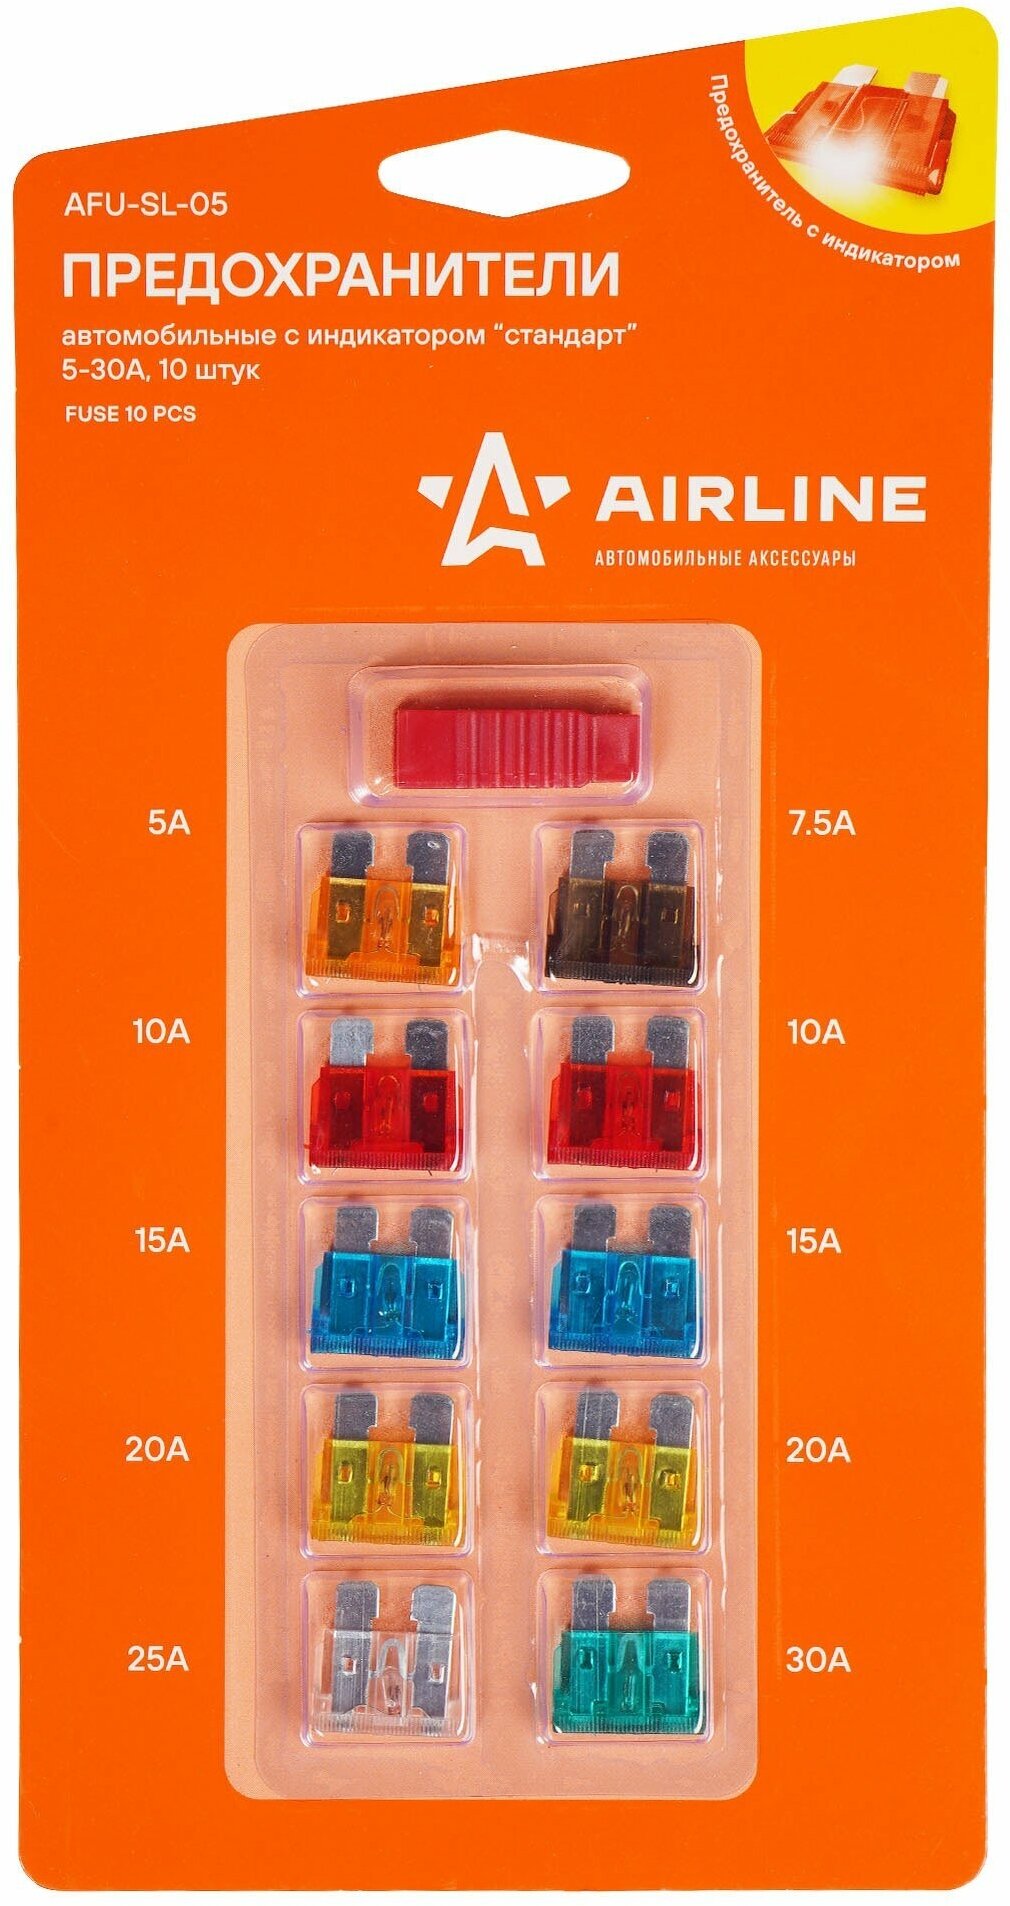 Набор предохранителей AIRLINE AFU-SL-05